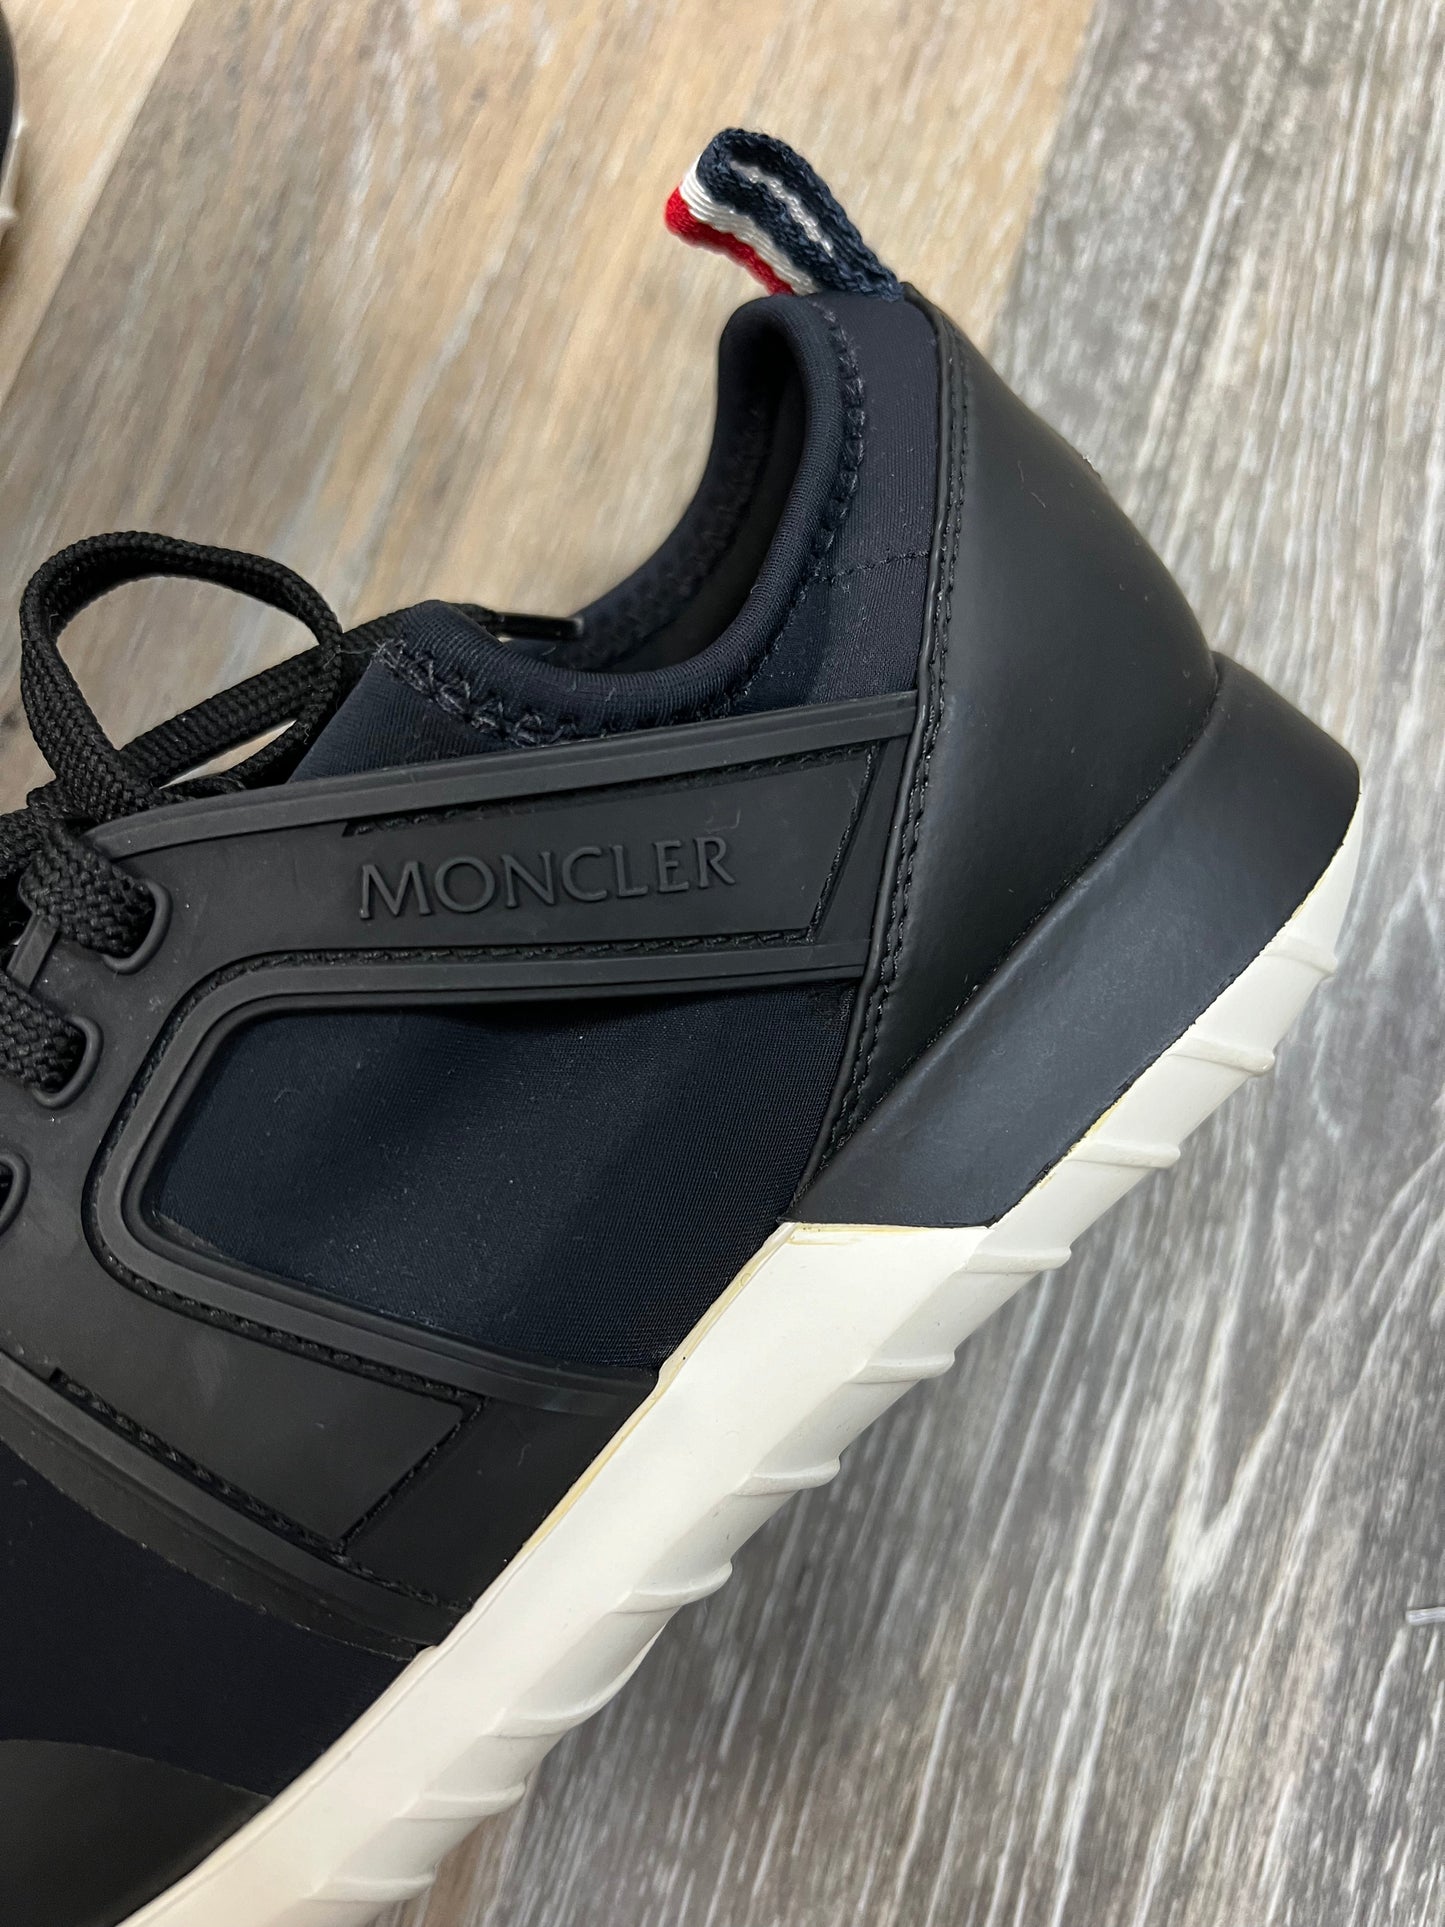 Black Shoes Designer Moncler, Size 7.5/37.5